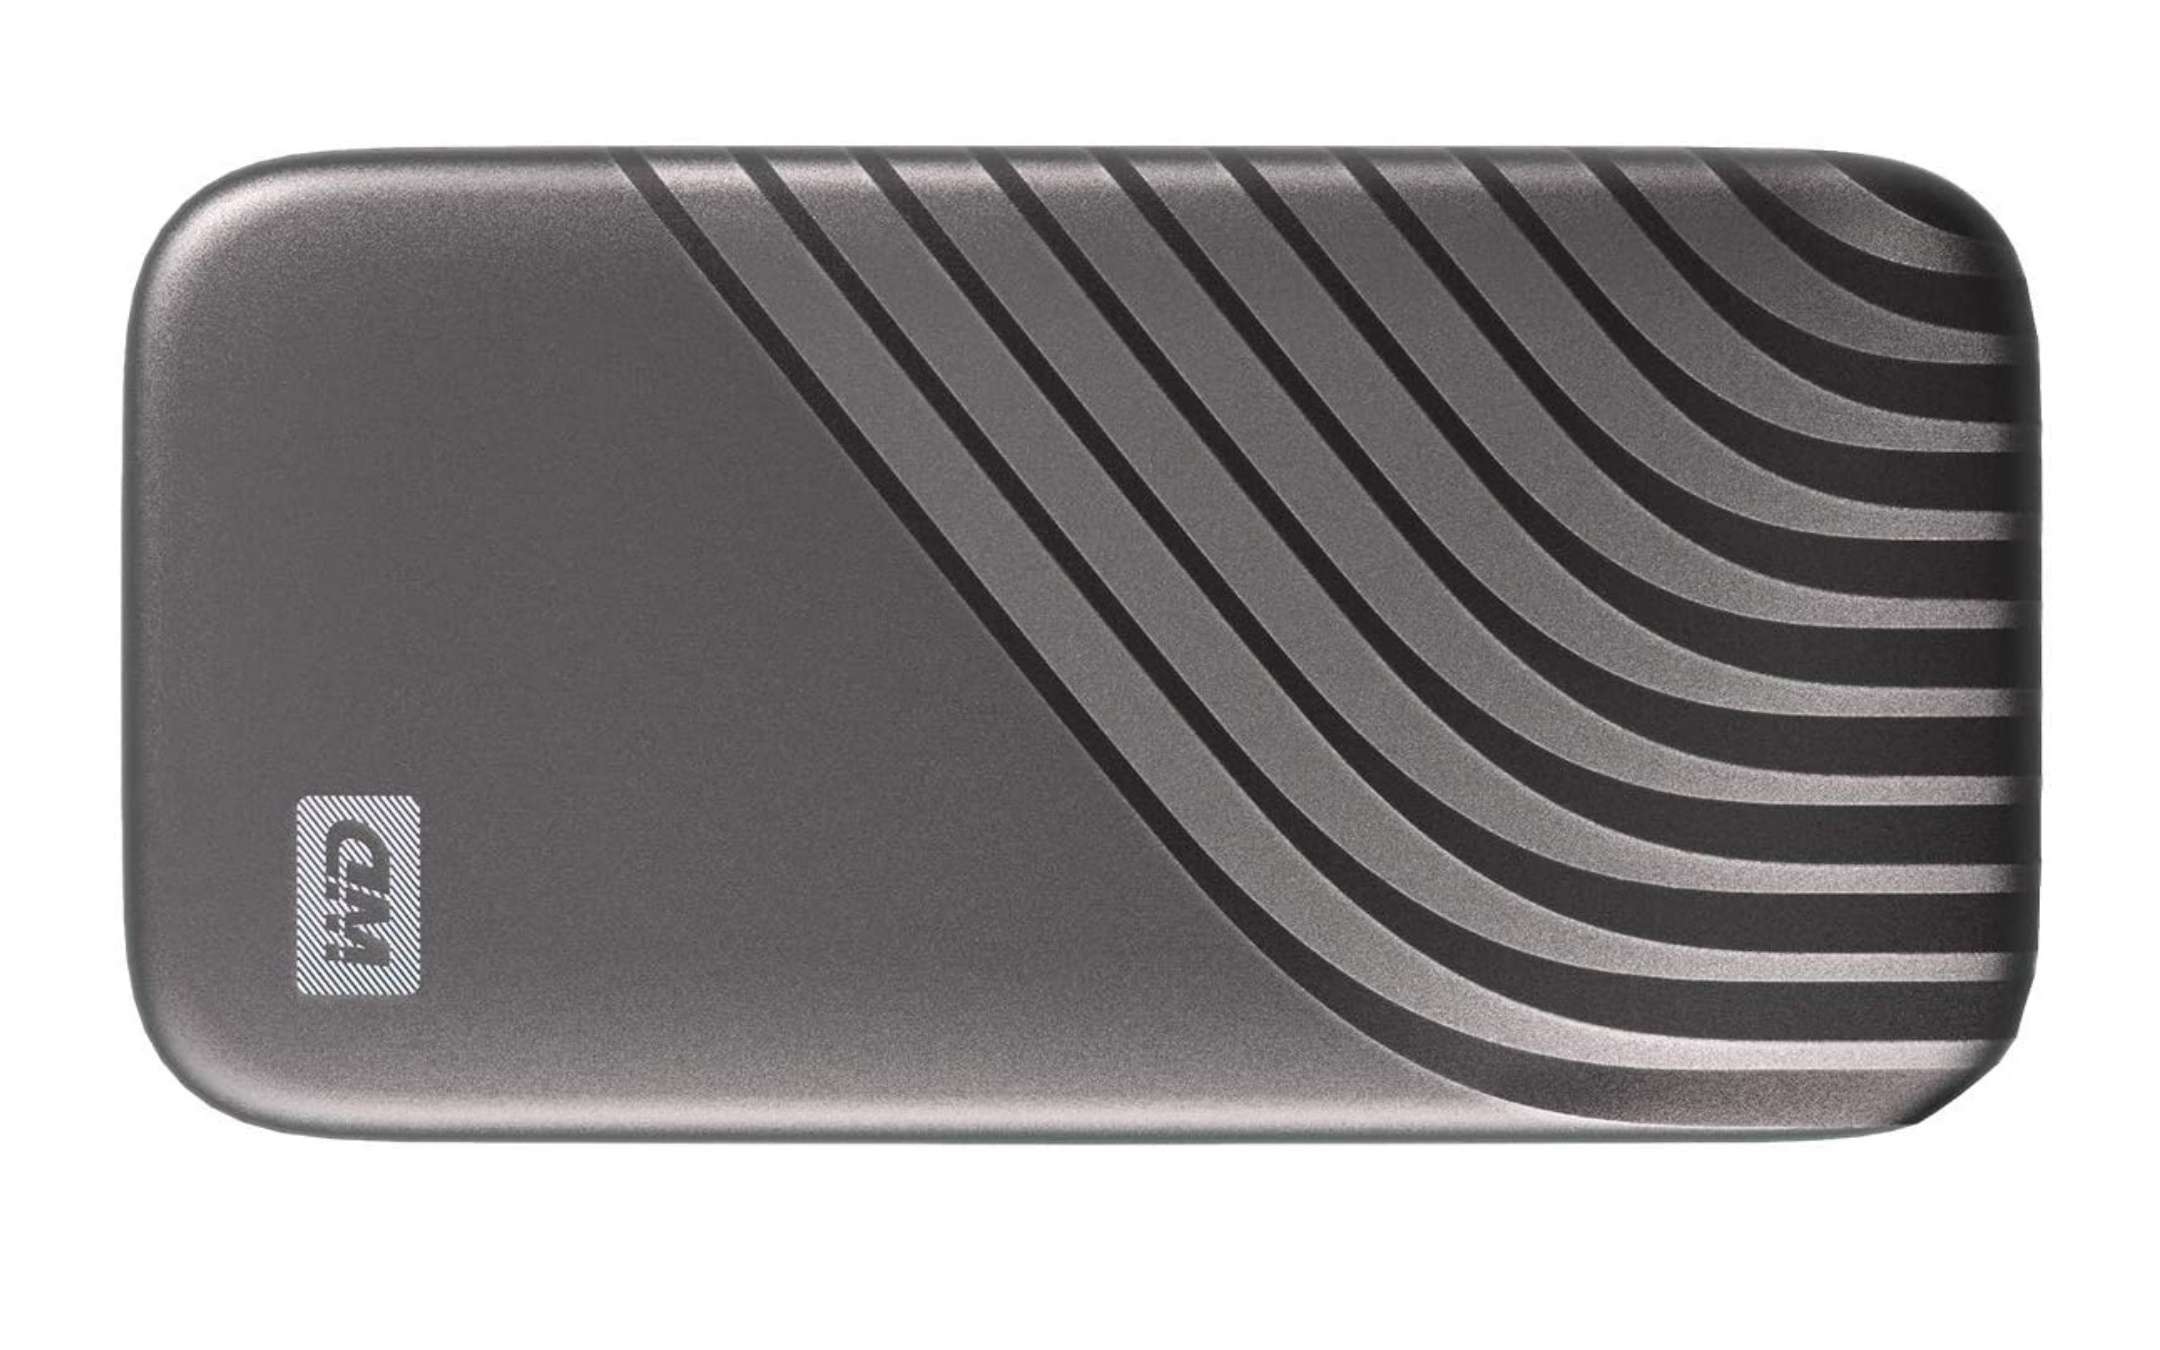 Nuovo minimo storico per l’SSD NVMe portatile WD MyPassport da 1TB